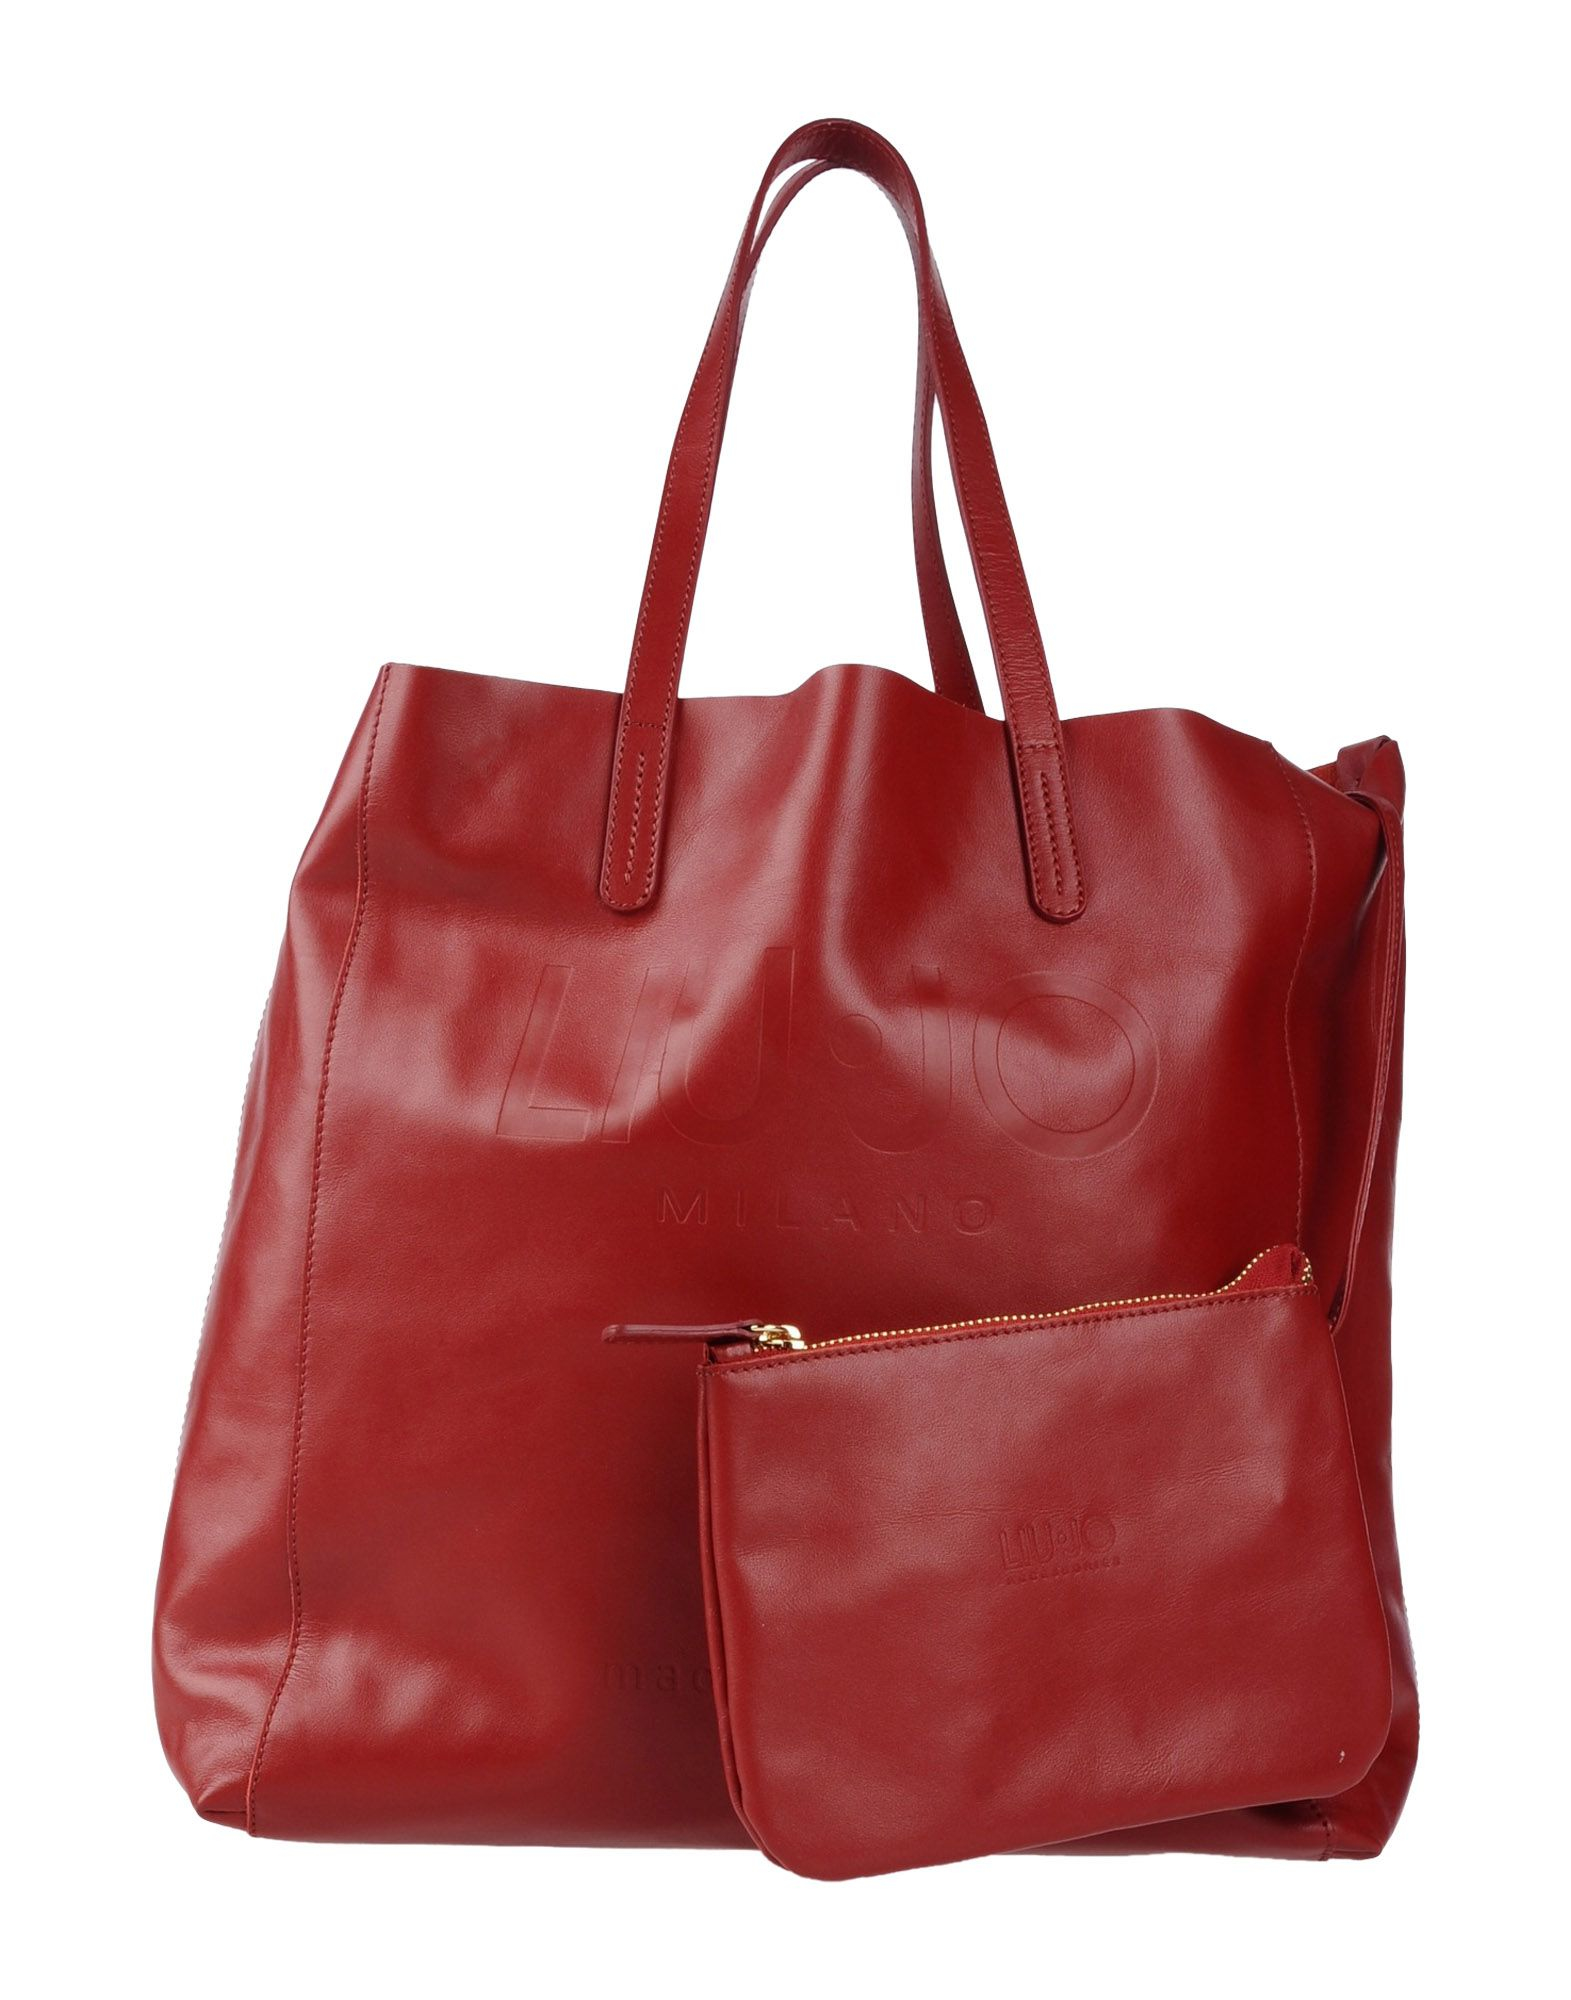 Lyst - Liu jo Handbag in Red